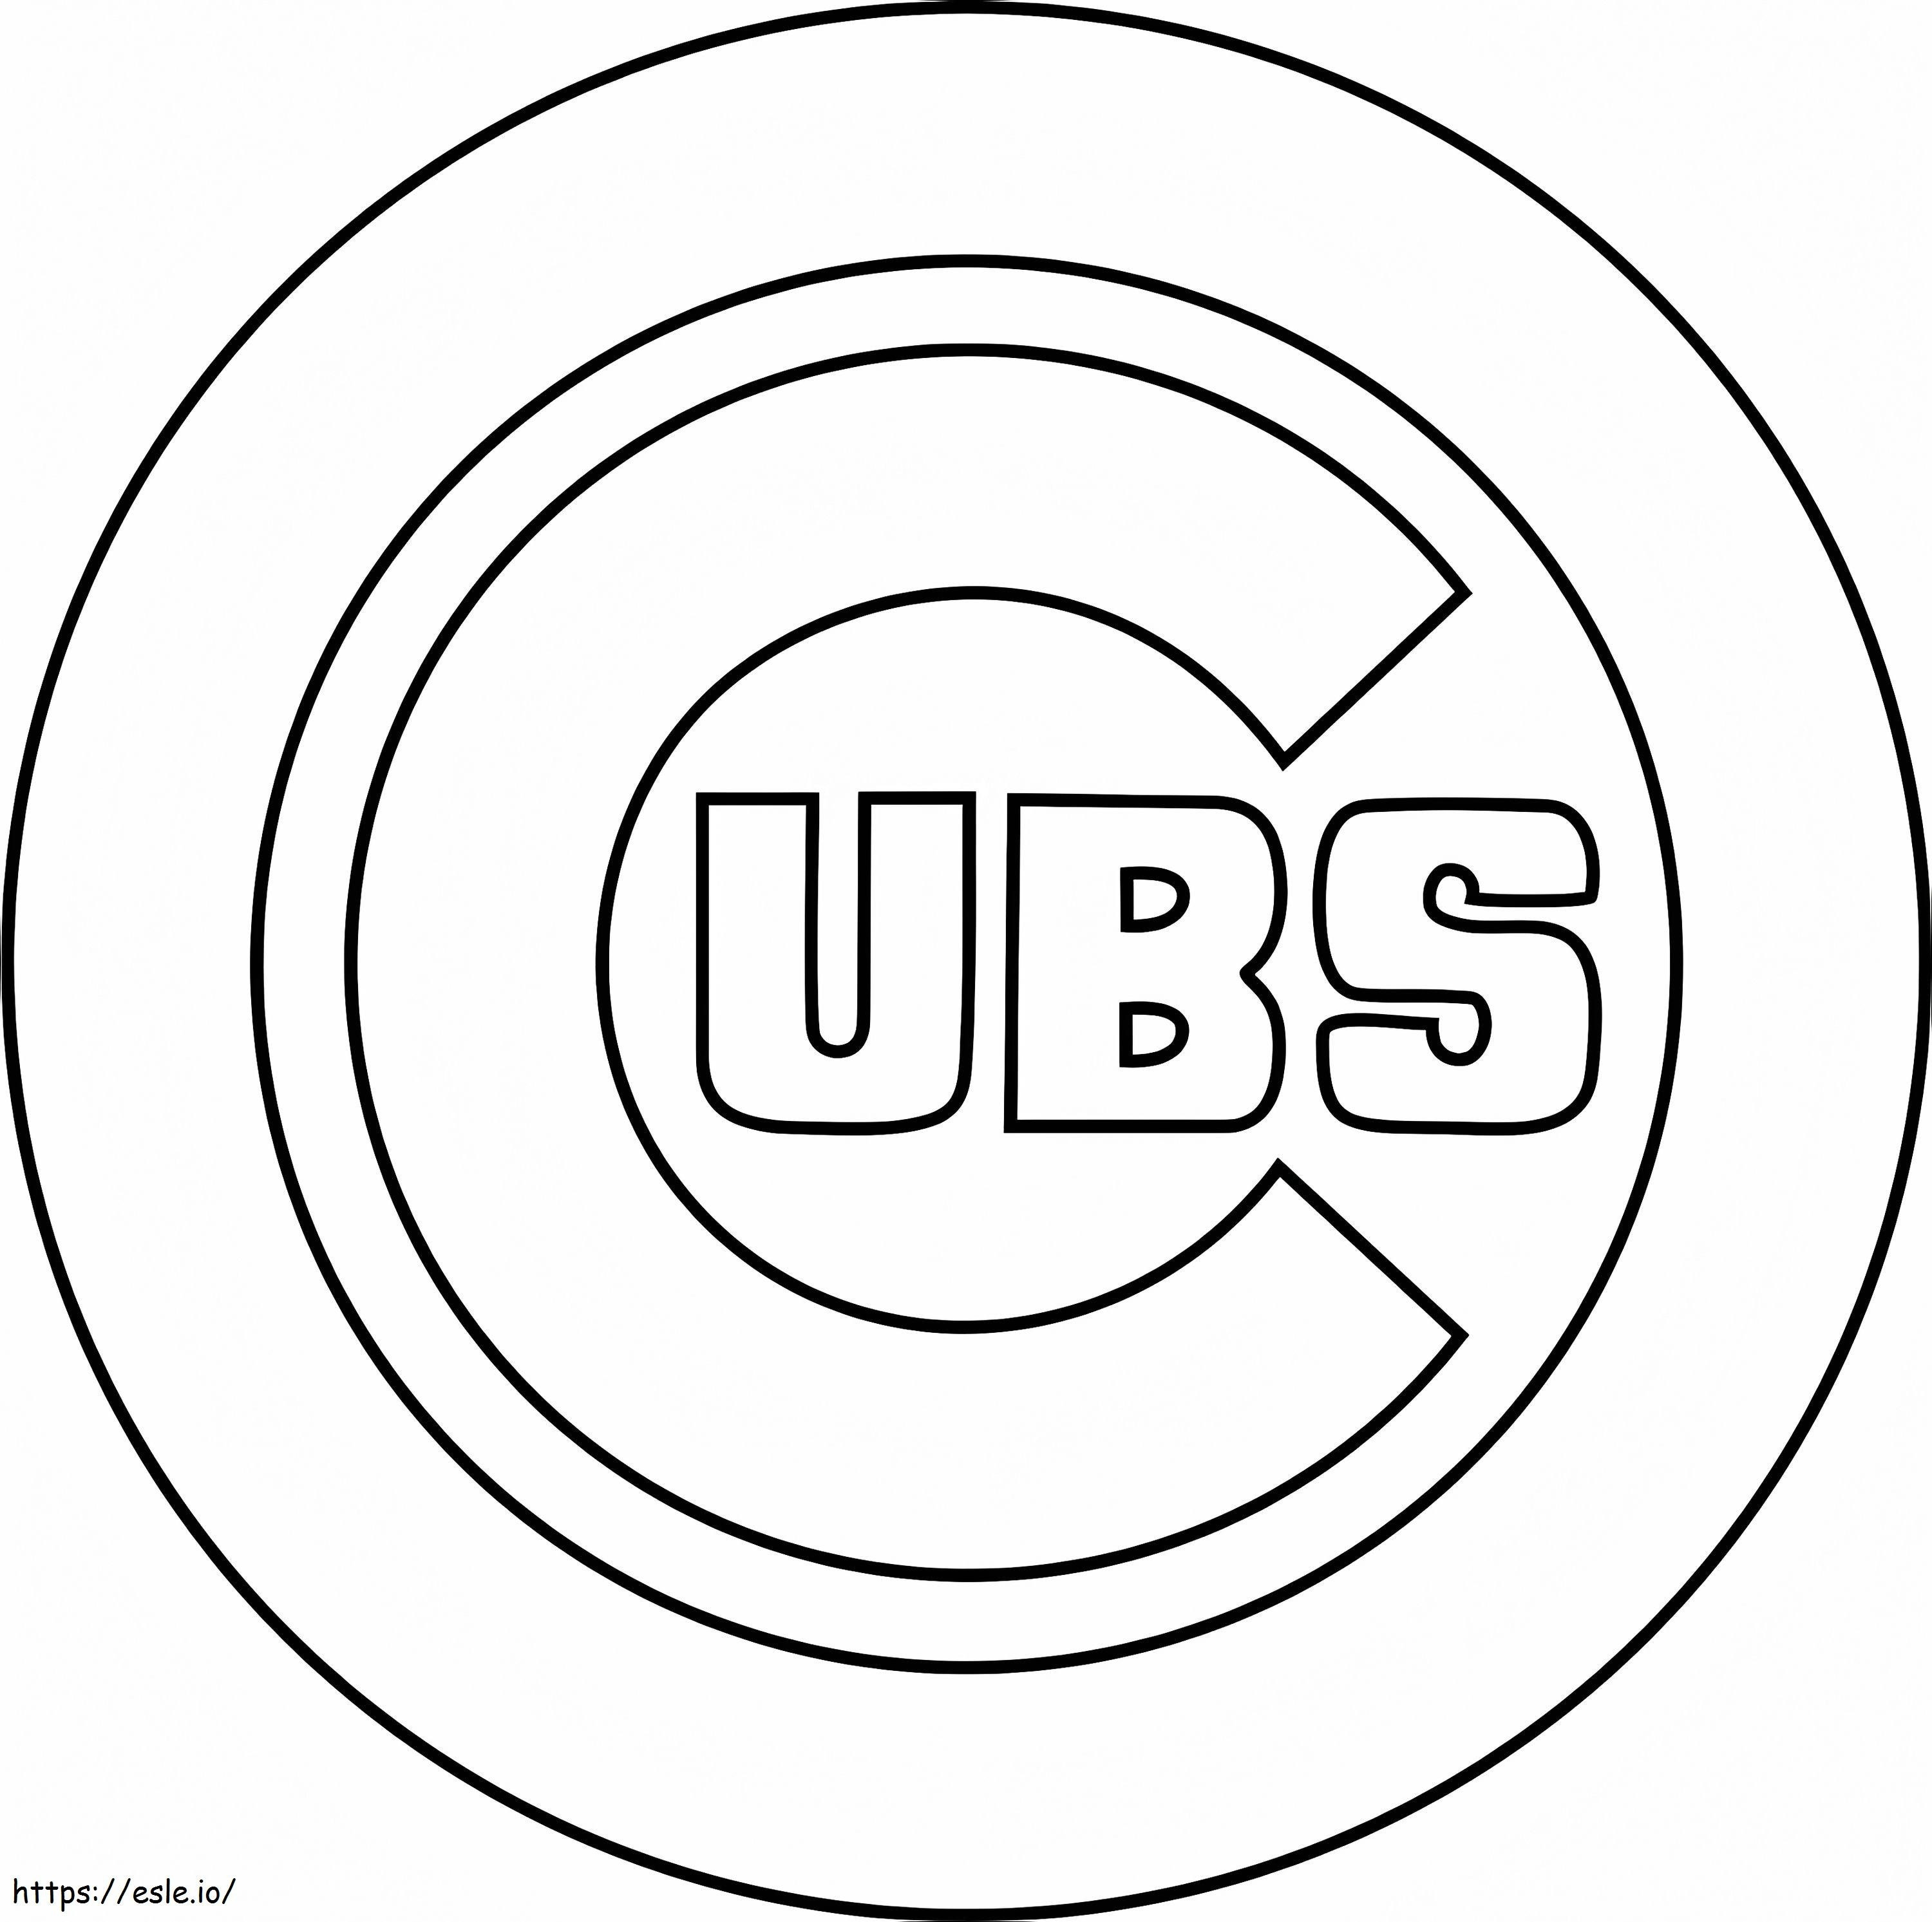 Chicago Cubs-logo kleurplaat kleurplaat